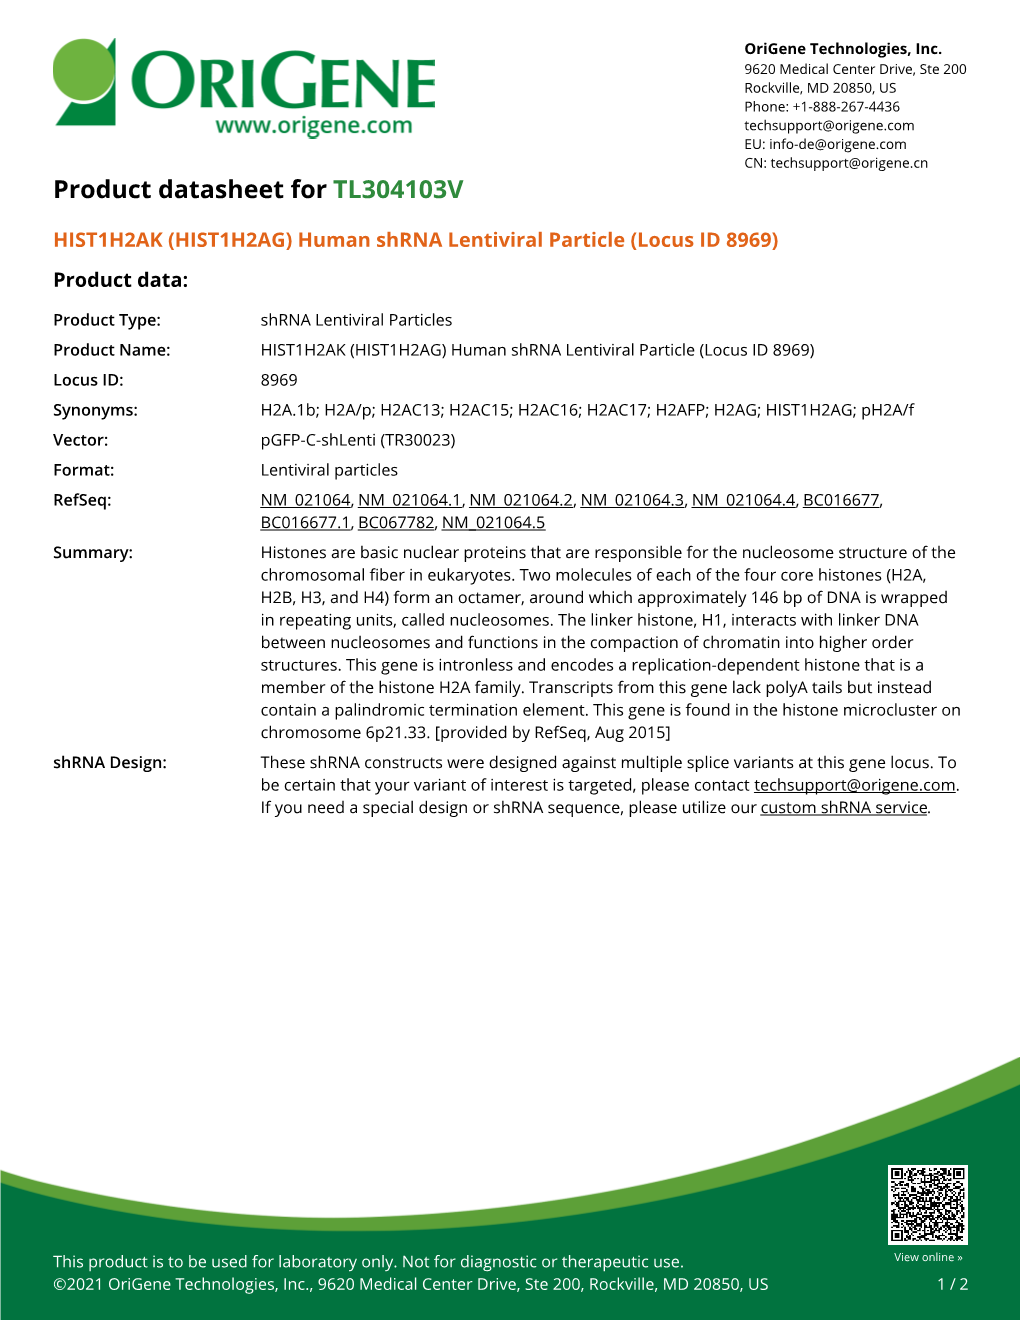 HIST1H2AK (HIST1H2AG) Human Shrna Lentiviral Particle (Locus ID 8969) Product Data